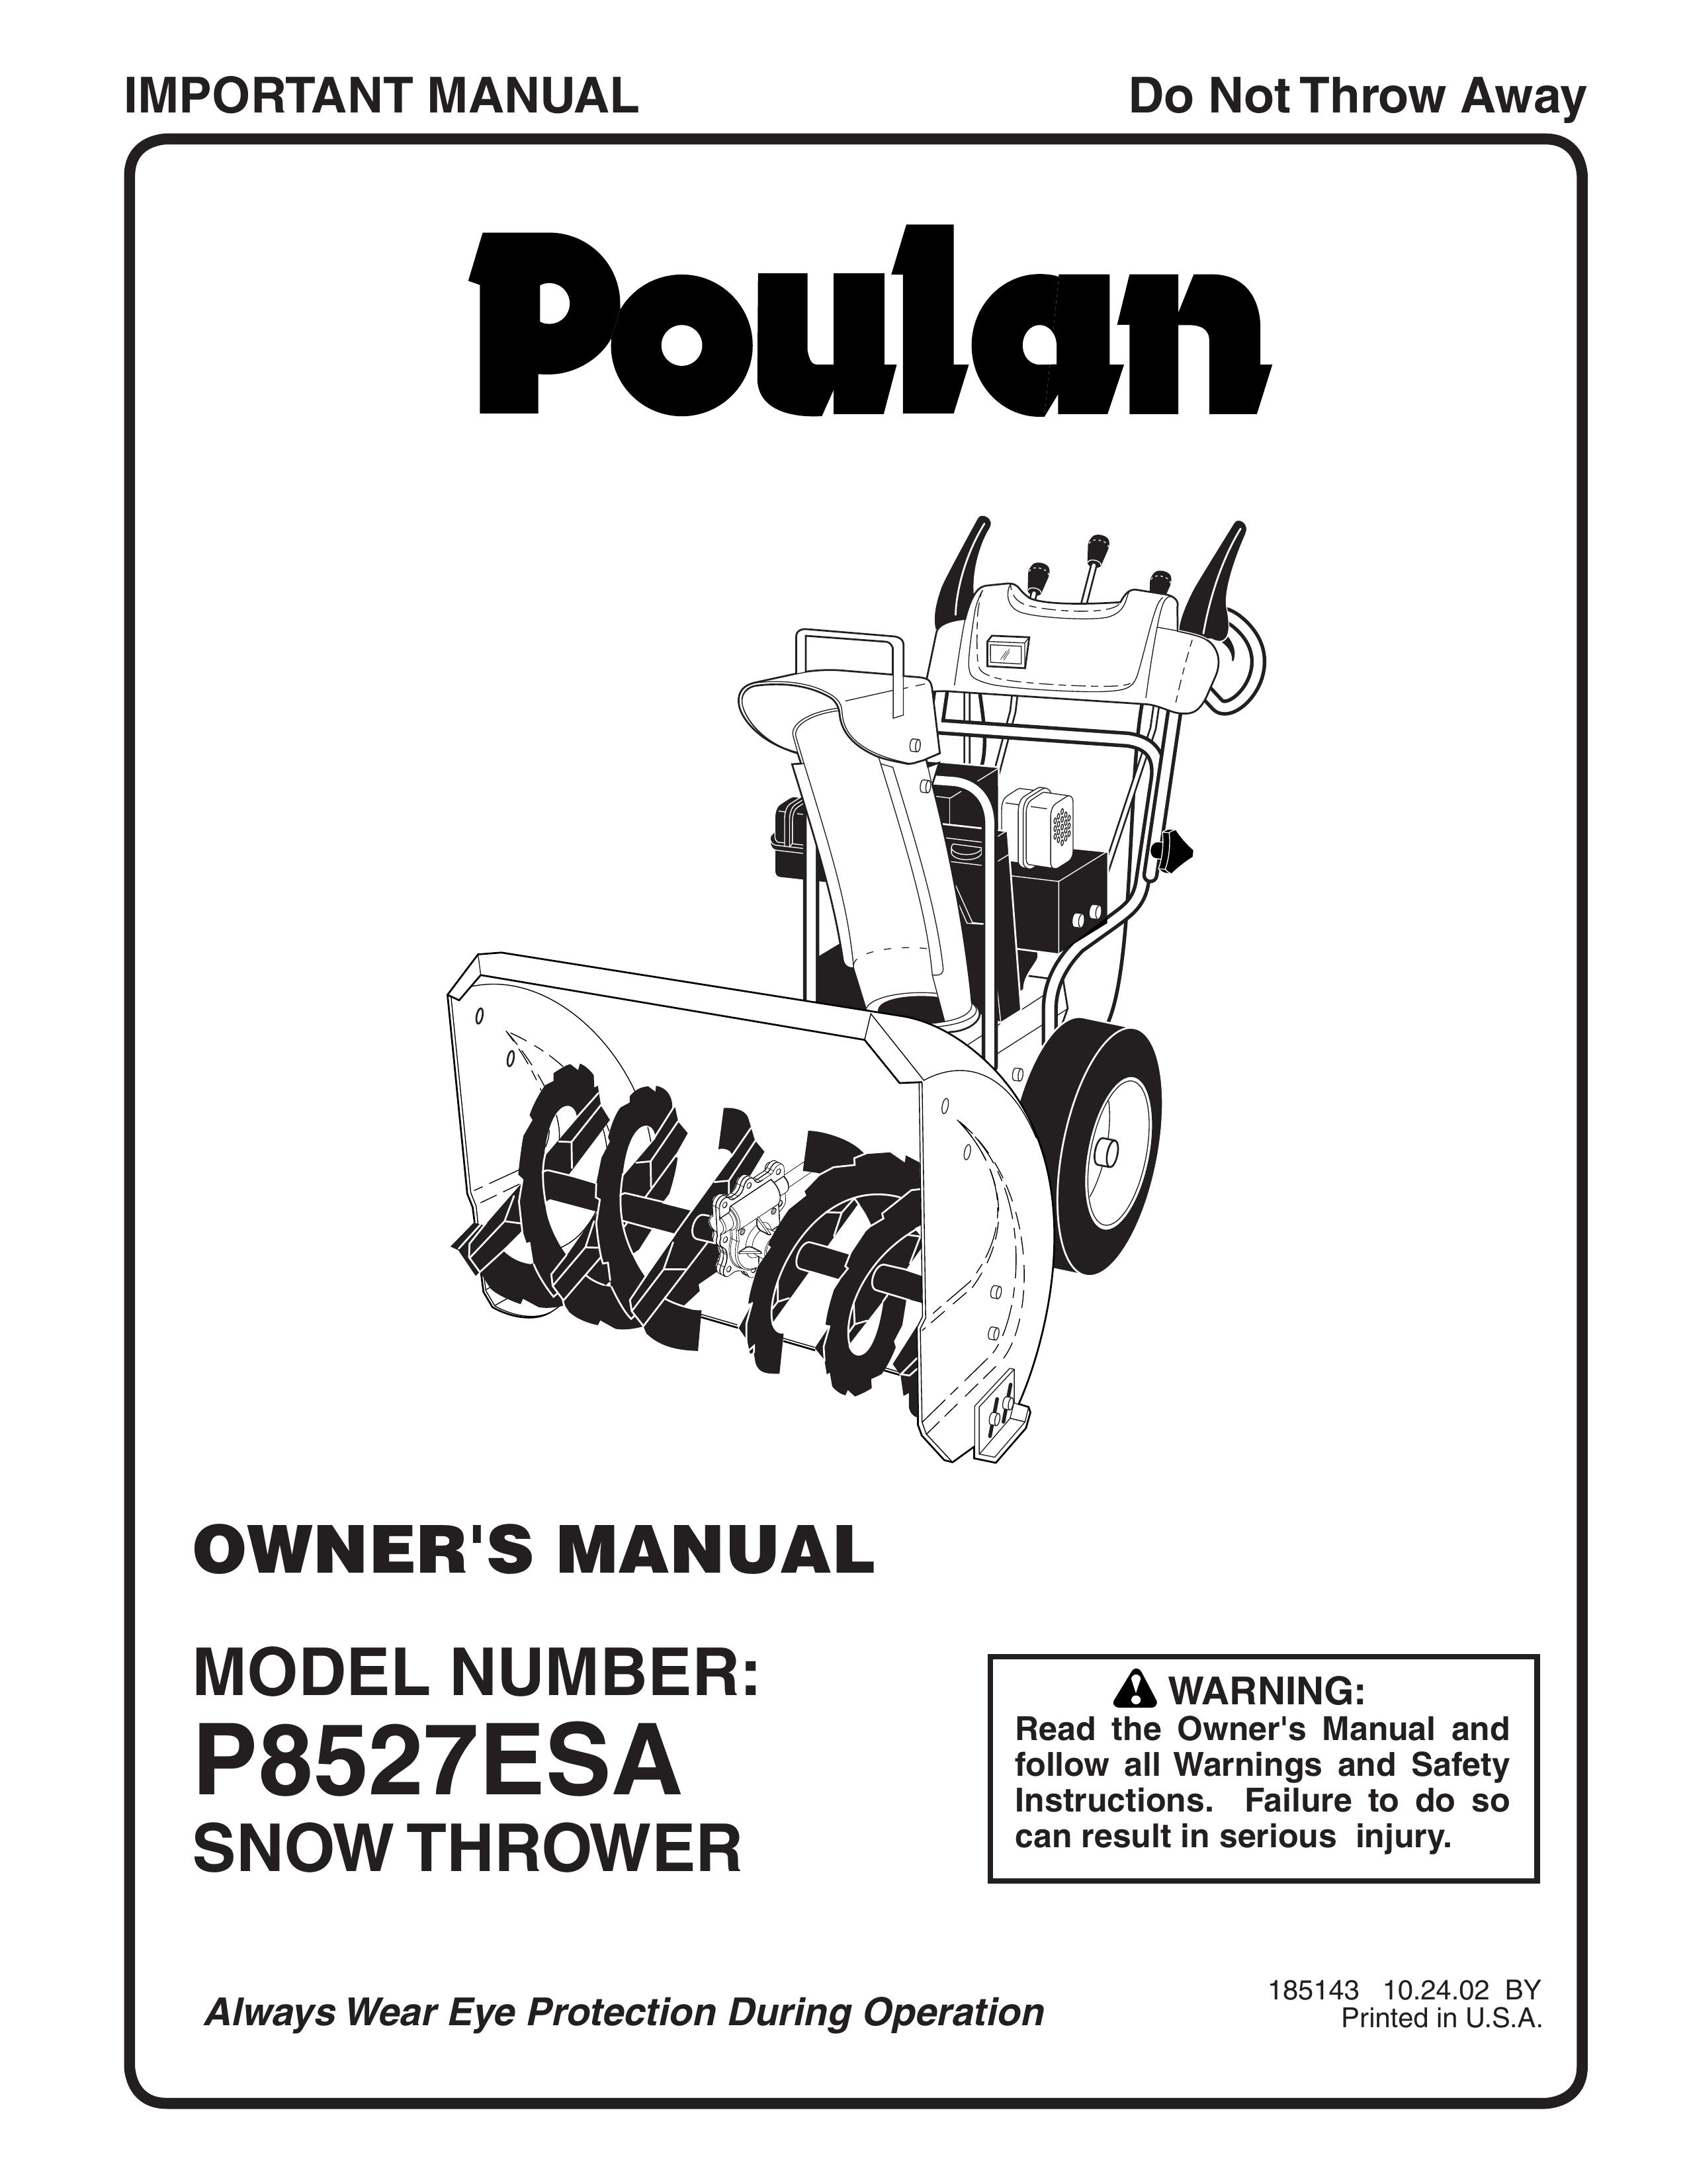 Poulan 185143 Snow Blower User Manual